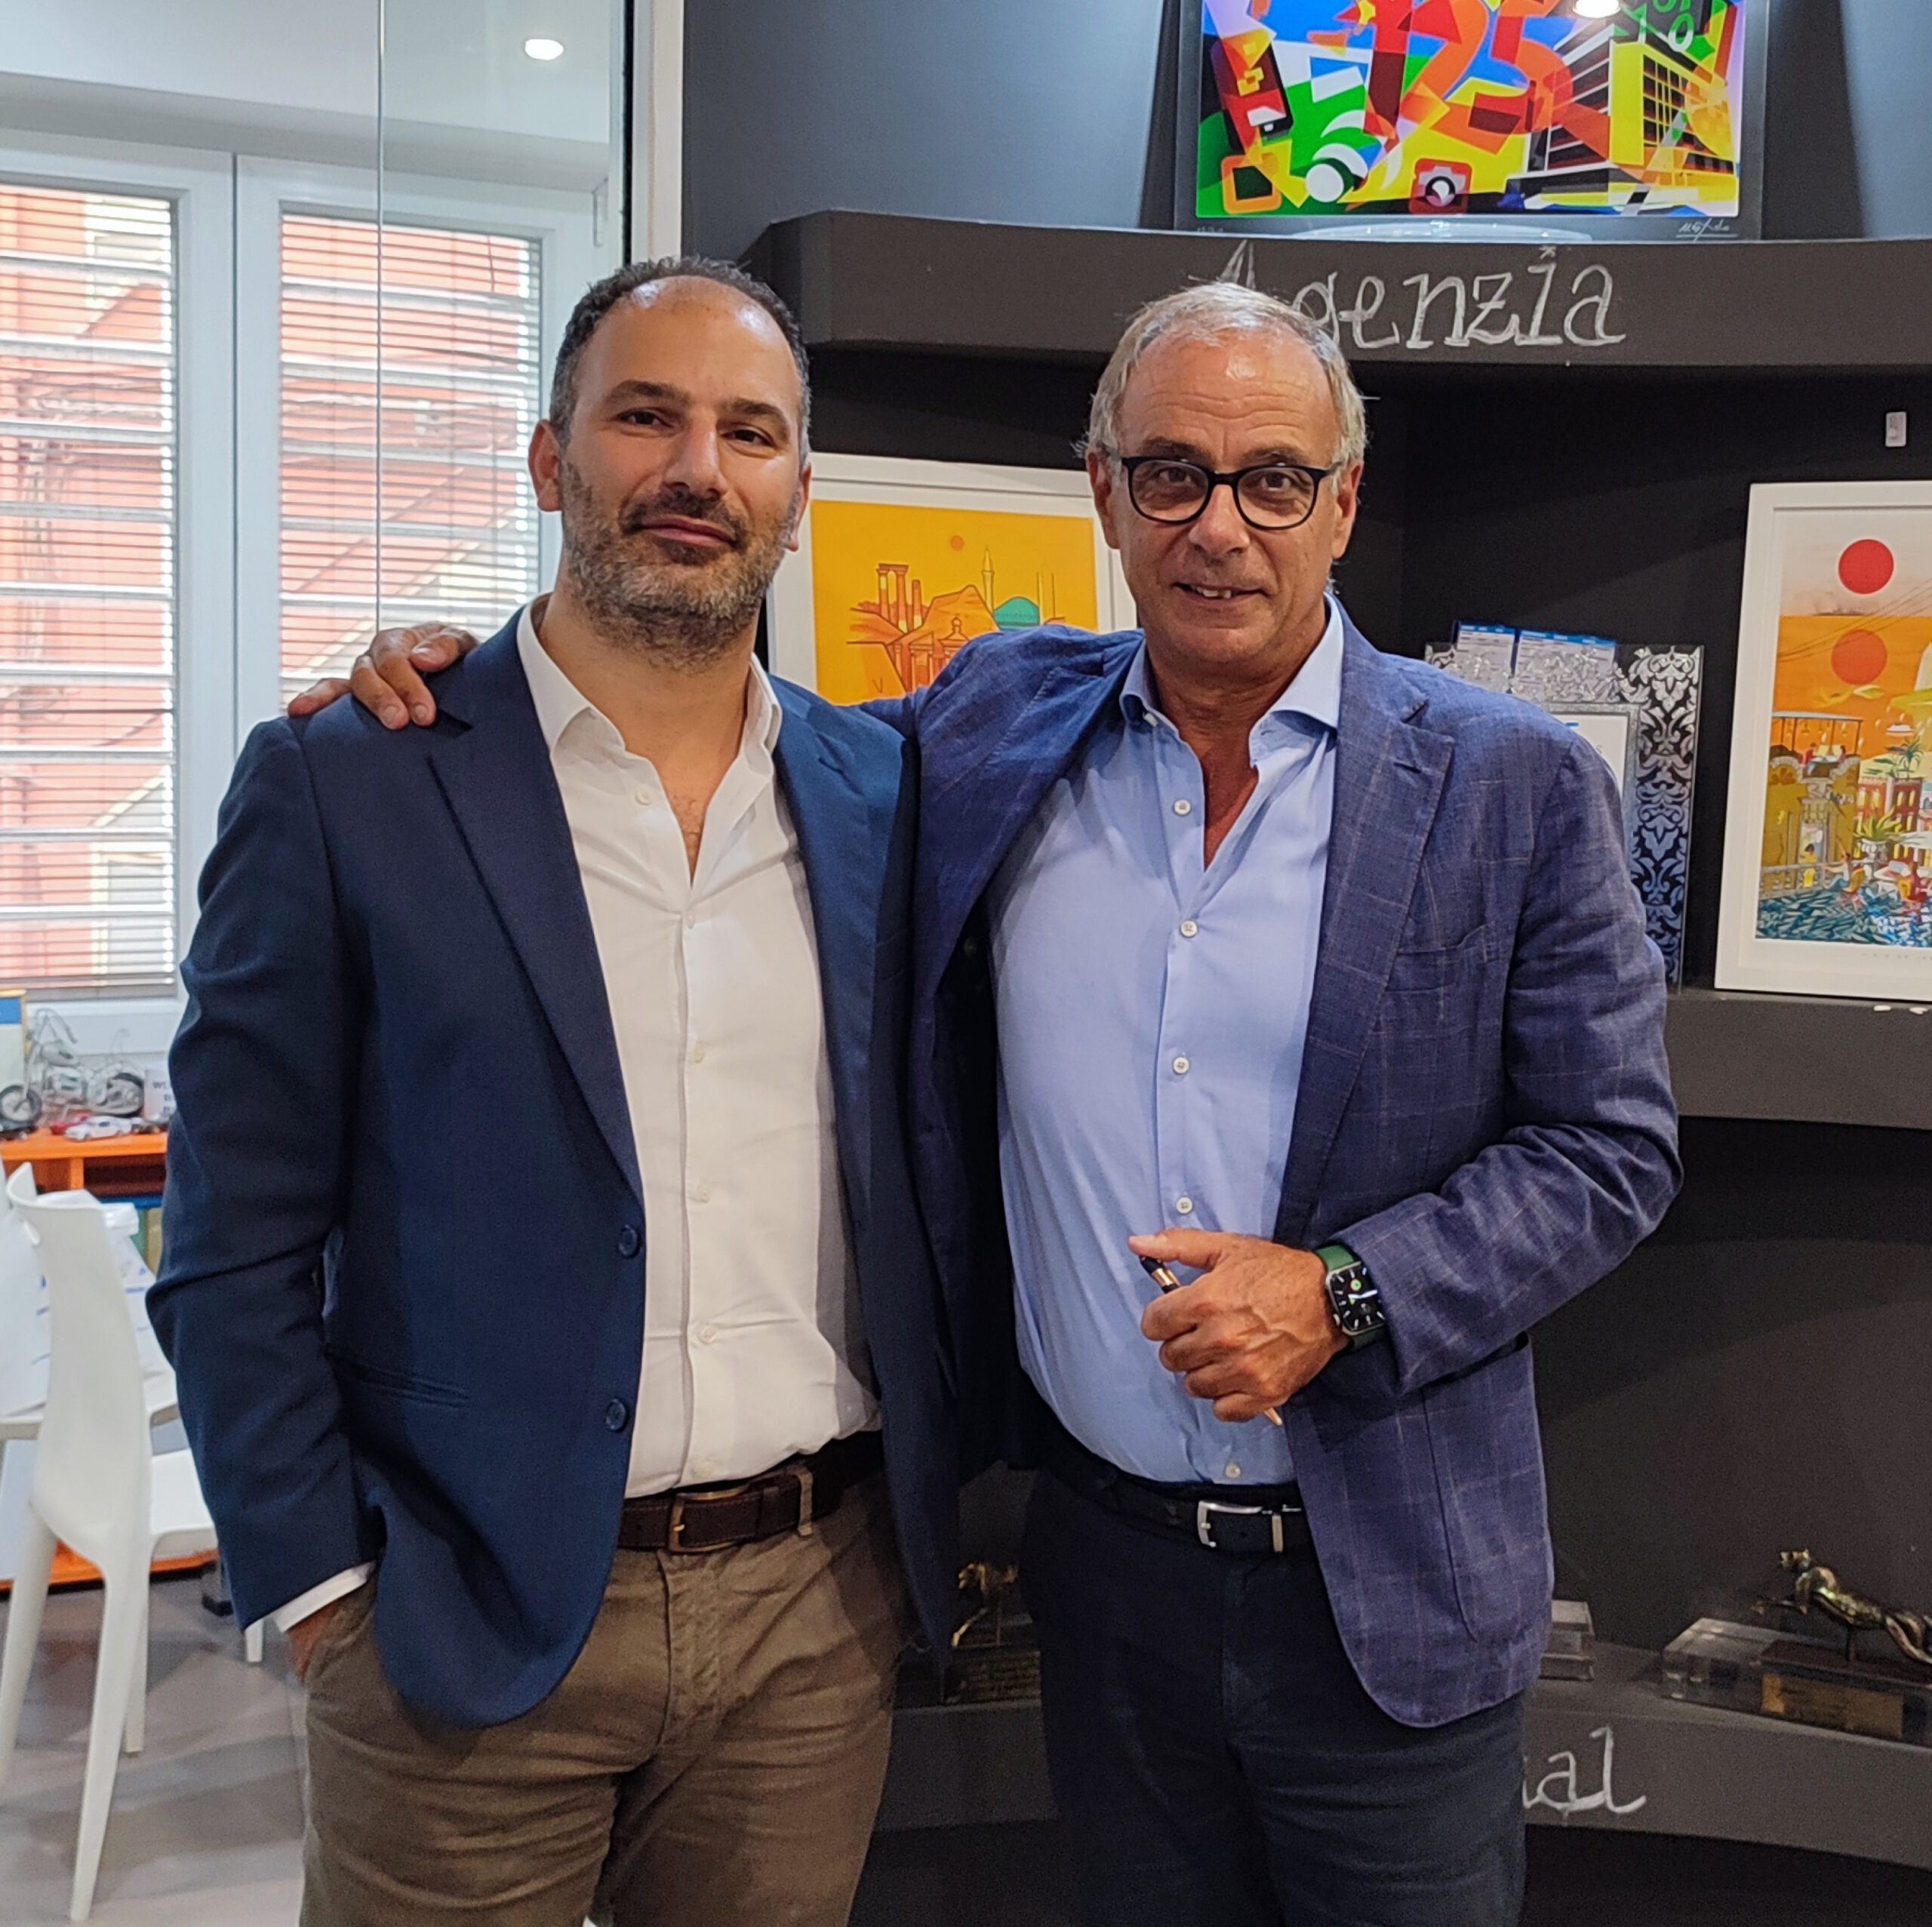 Antonio de Filippis e Eugenio Vatrella, i CEO di Agorass